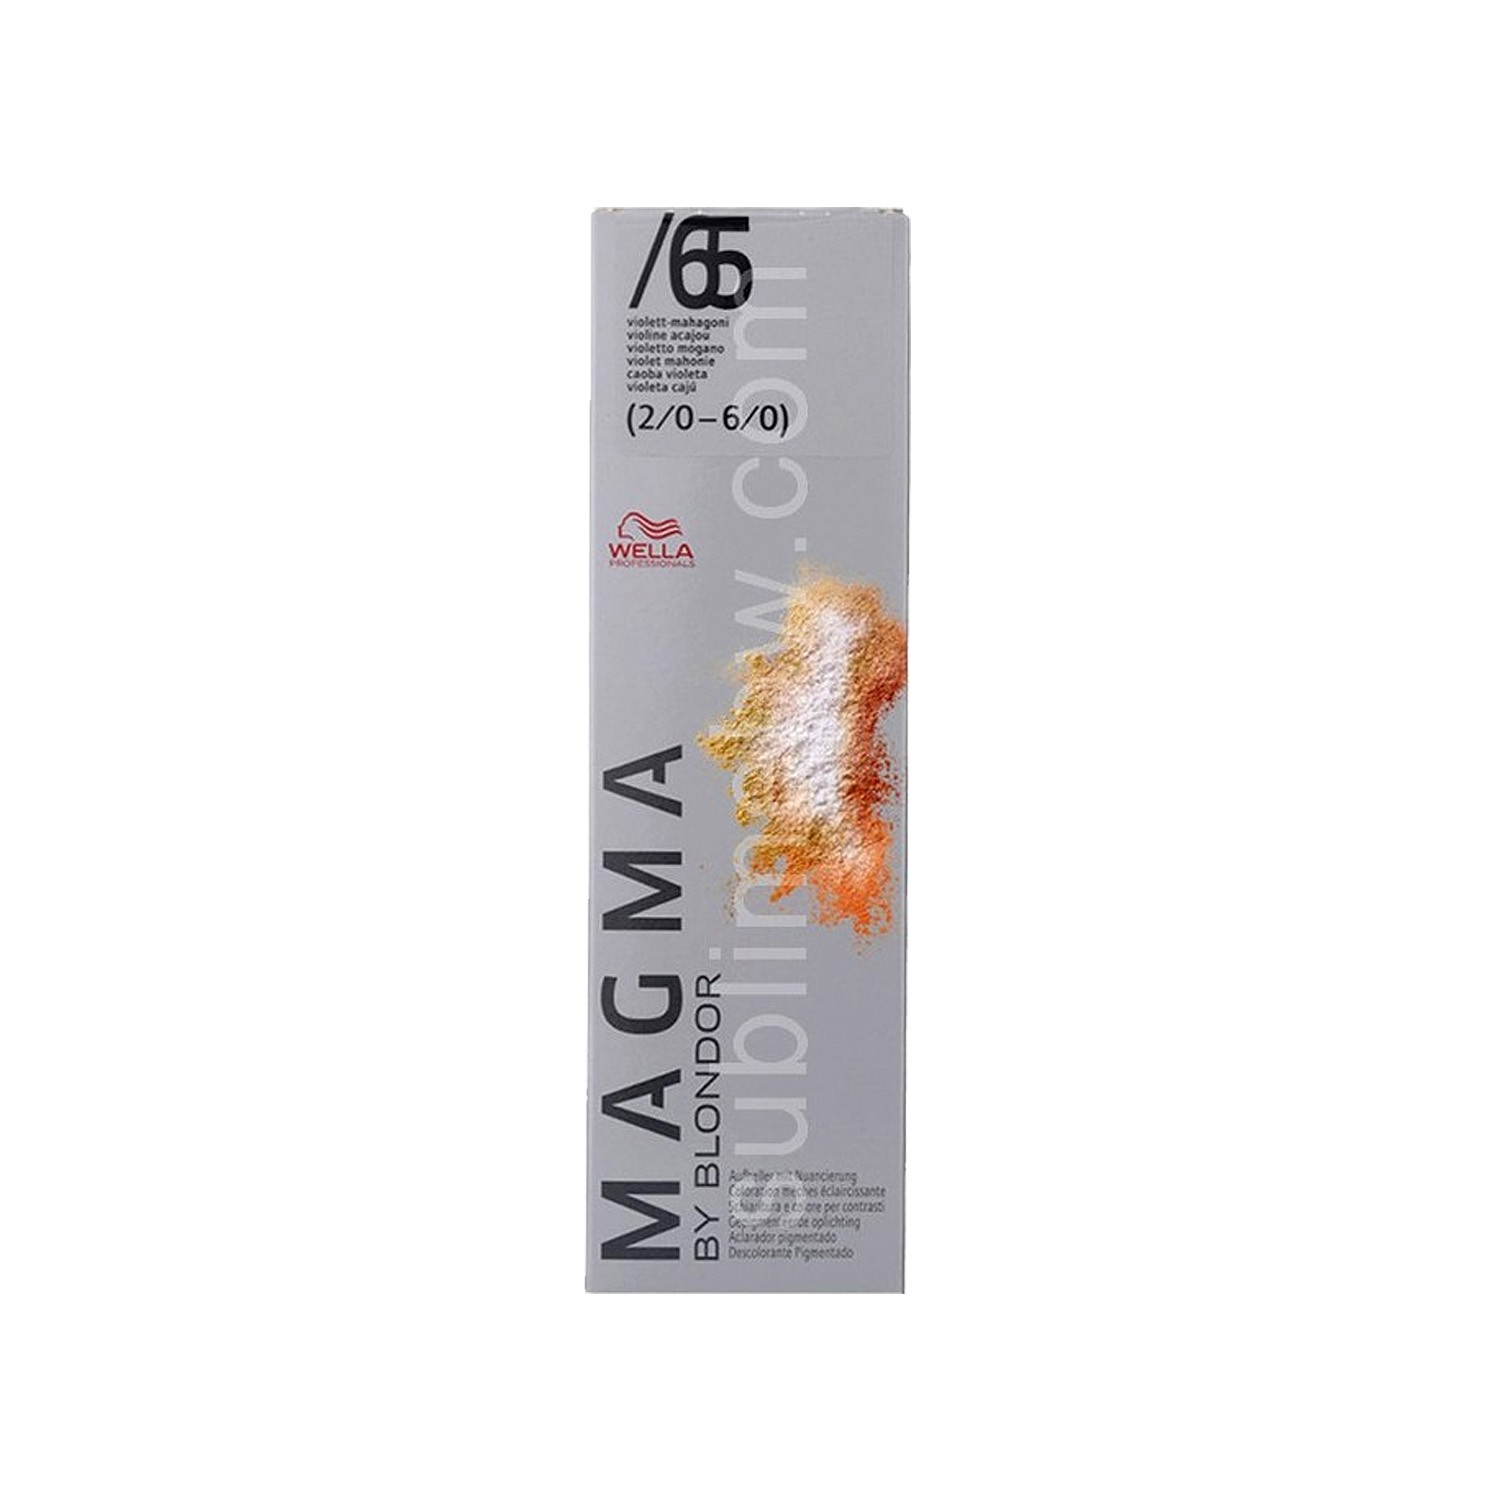 Wella Magma Color /65 120G (2/0 - 6/0)